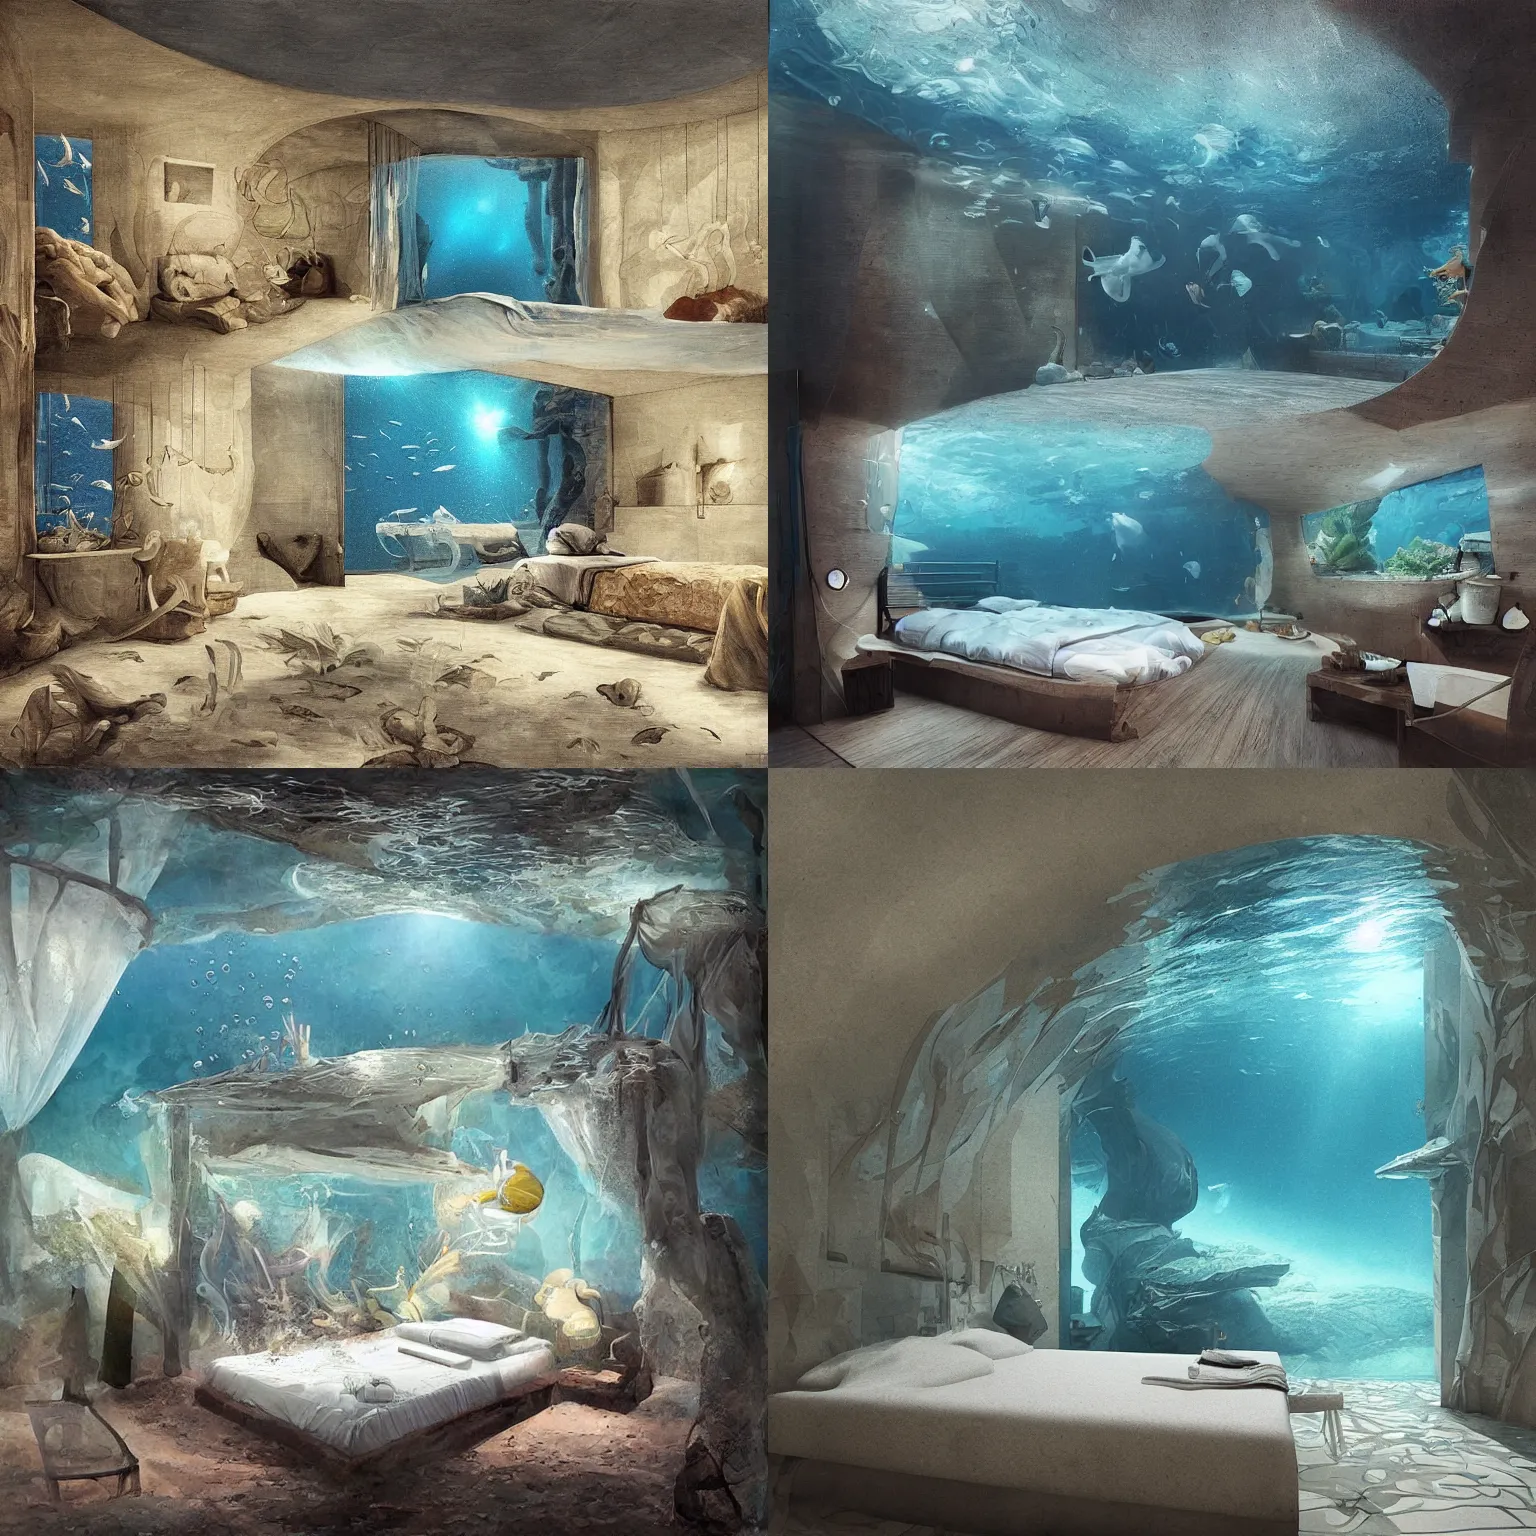 Prompt: underwater bedroom by Rafaello Ossola